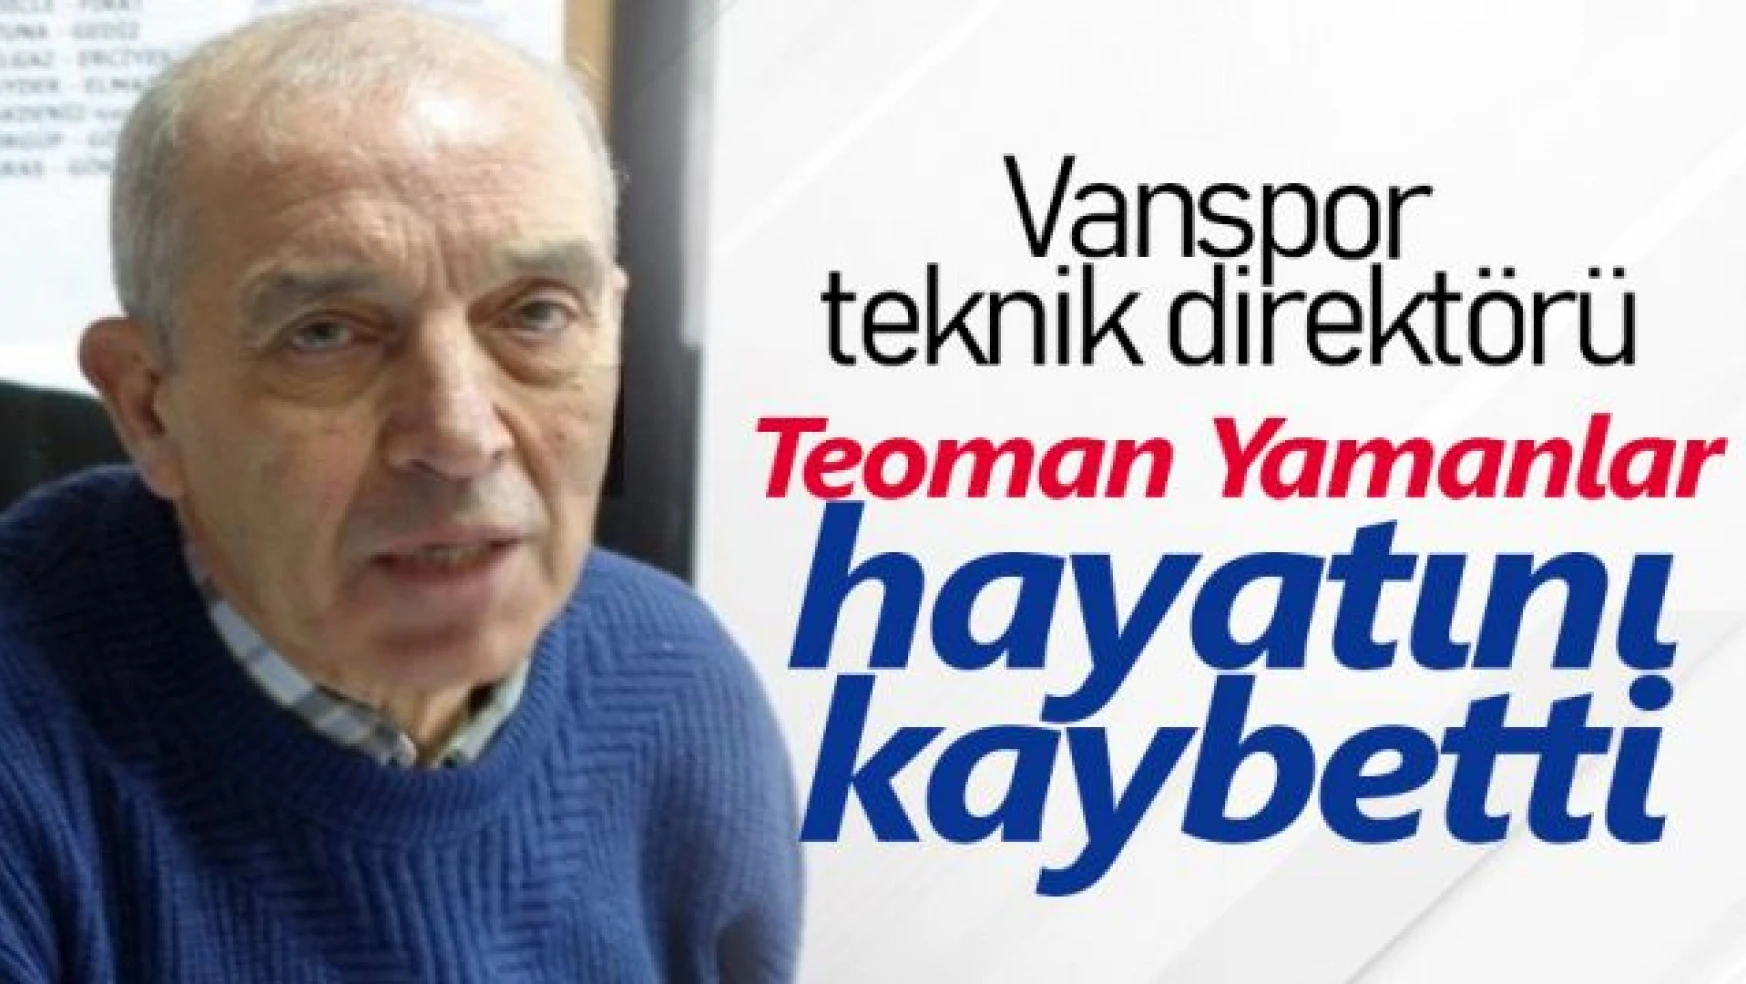 Vanspor eski teknik direktörü Teoman Yamanlar hayatını kaybetti